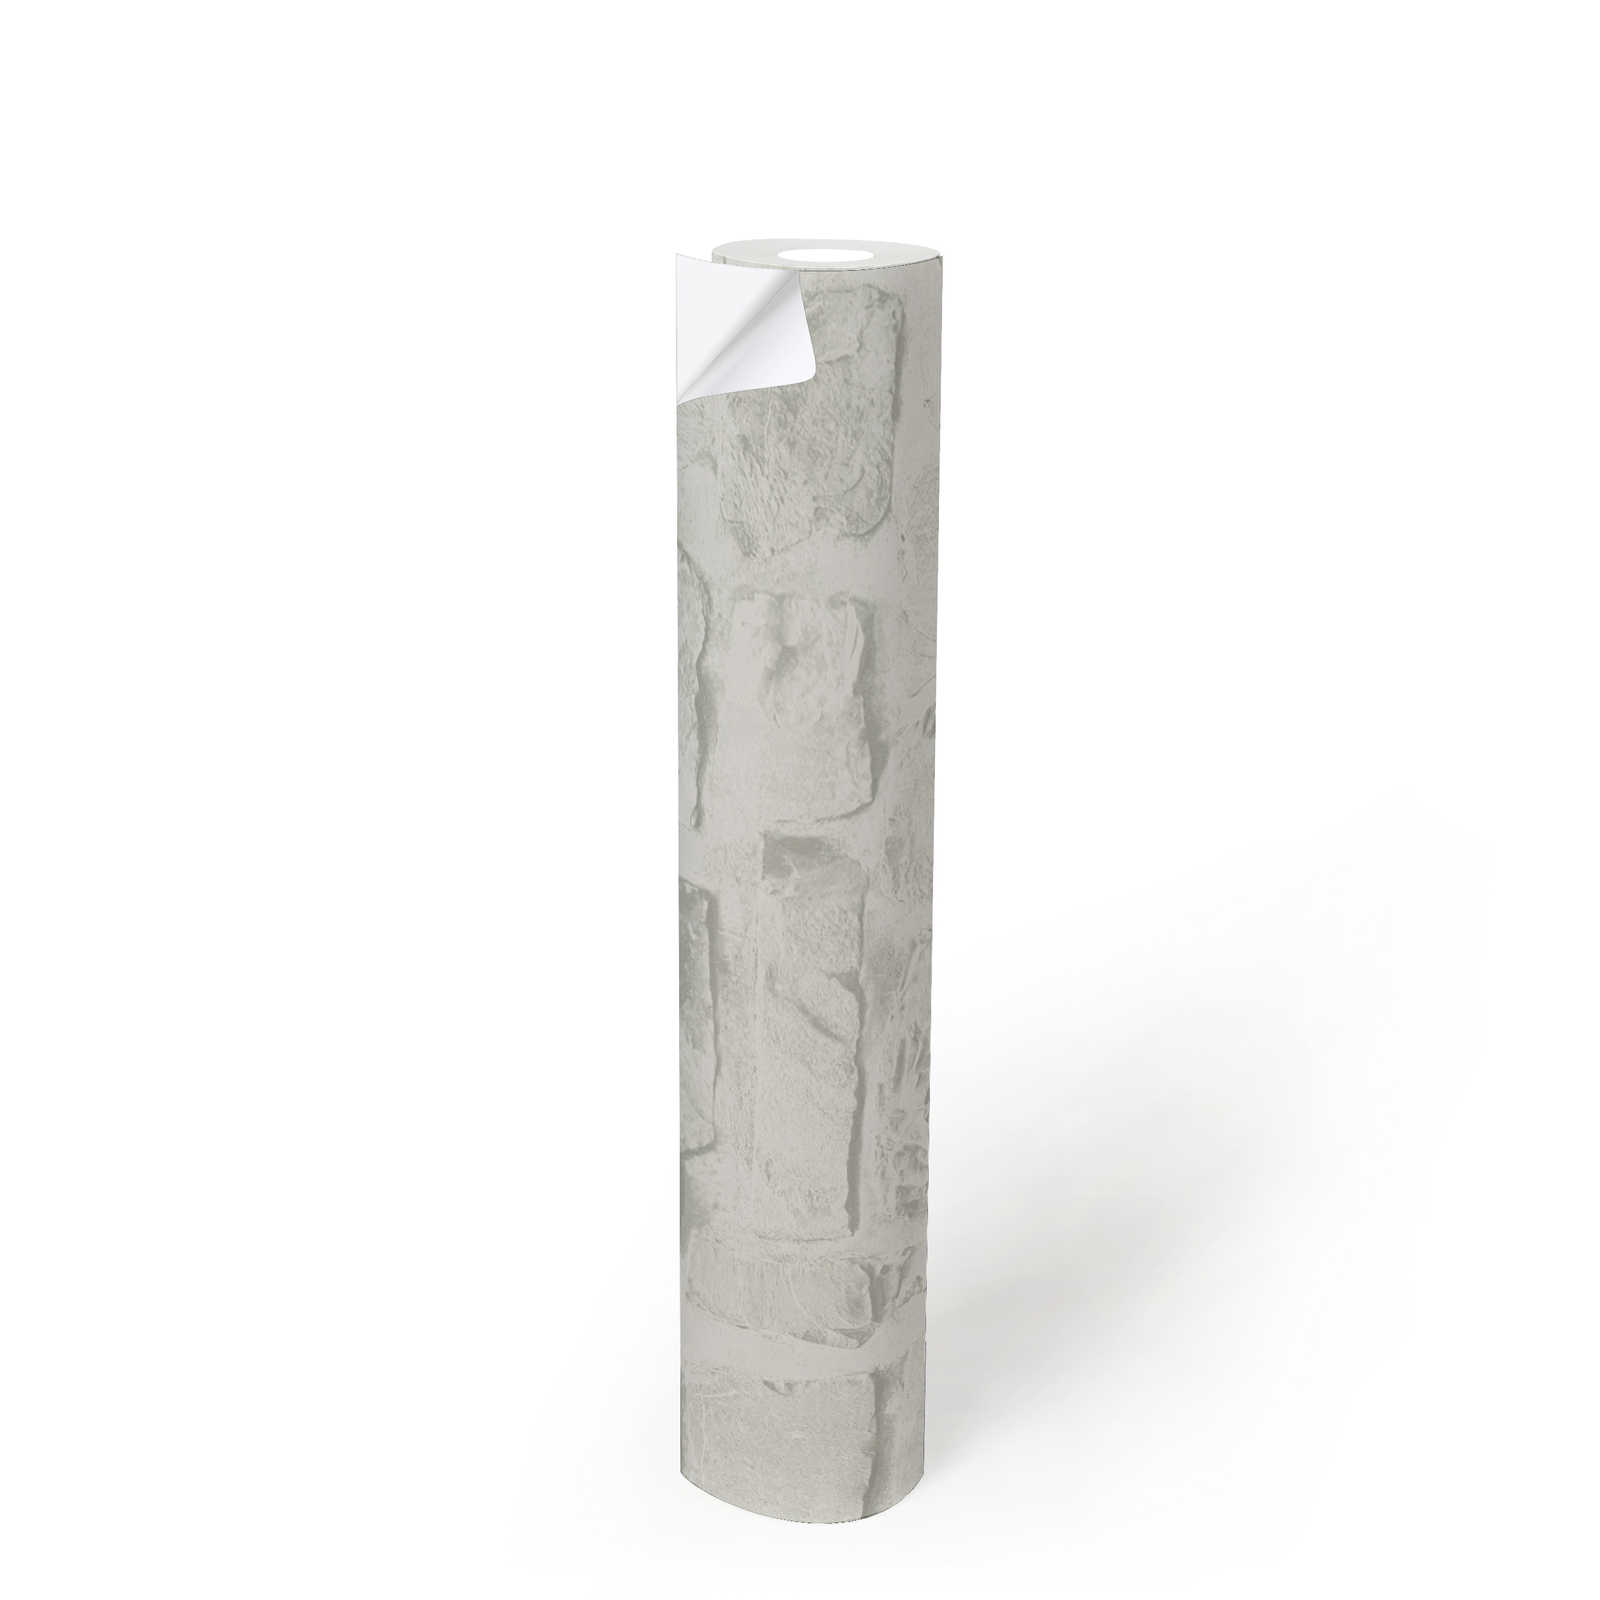             Zelfklevend behangpapier | Steenlook wit met 3D-optiek - Wit, Grijs
        